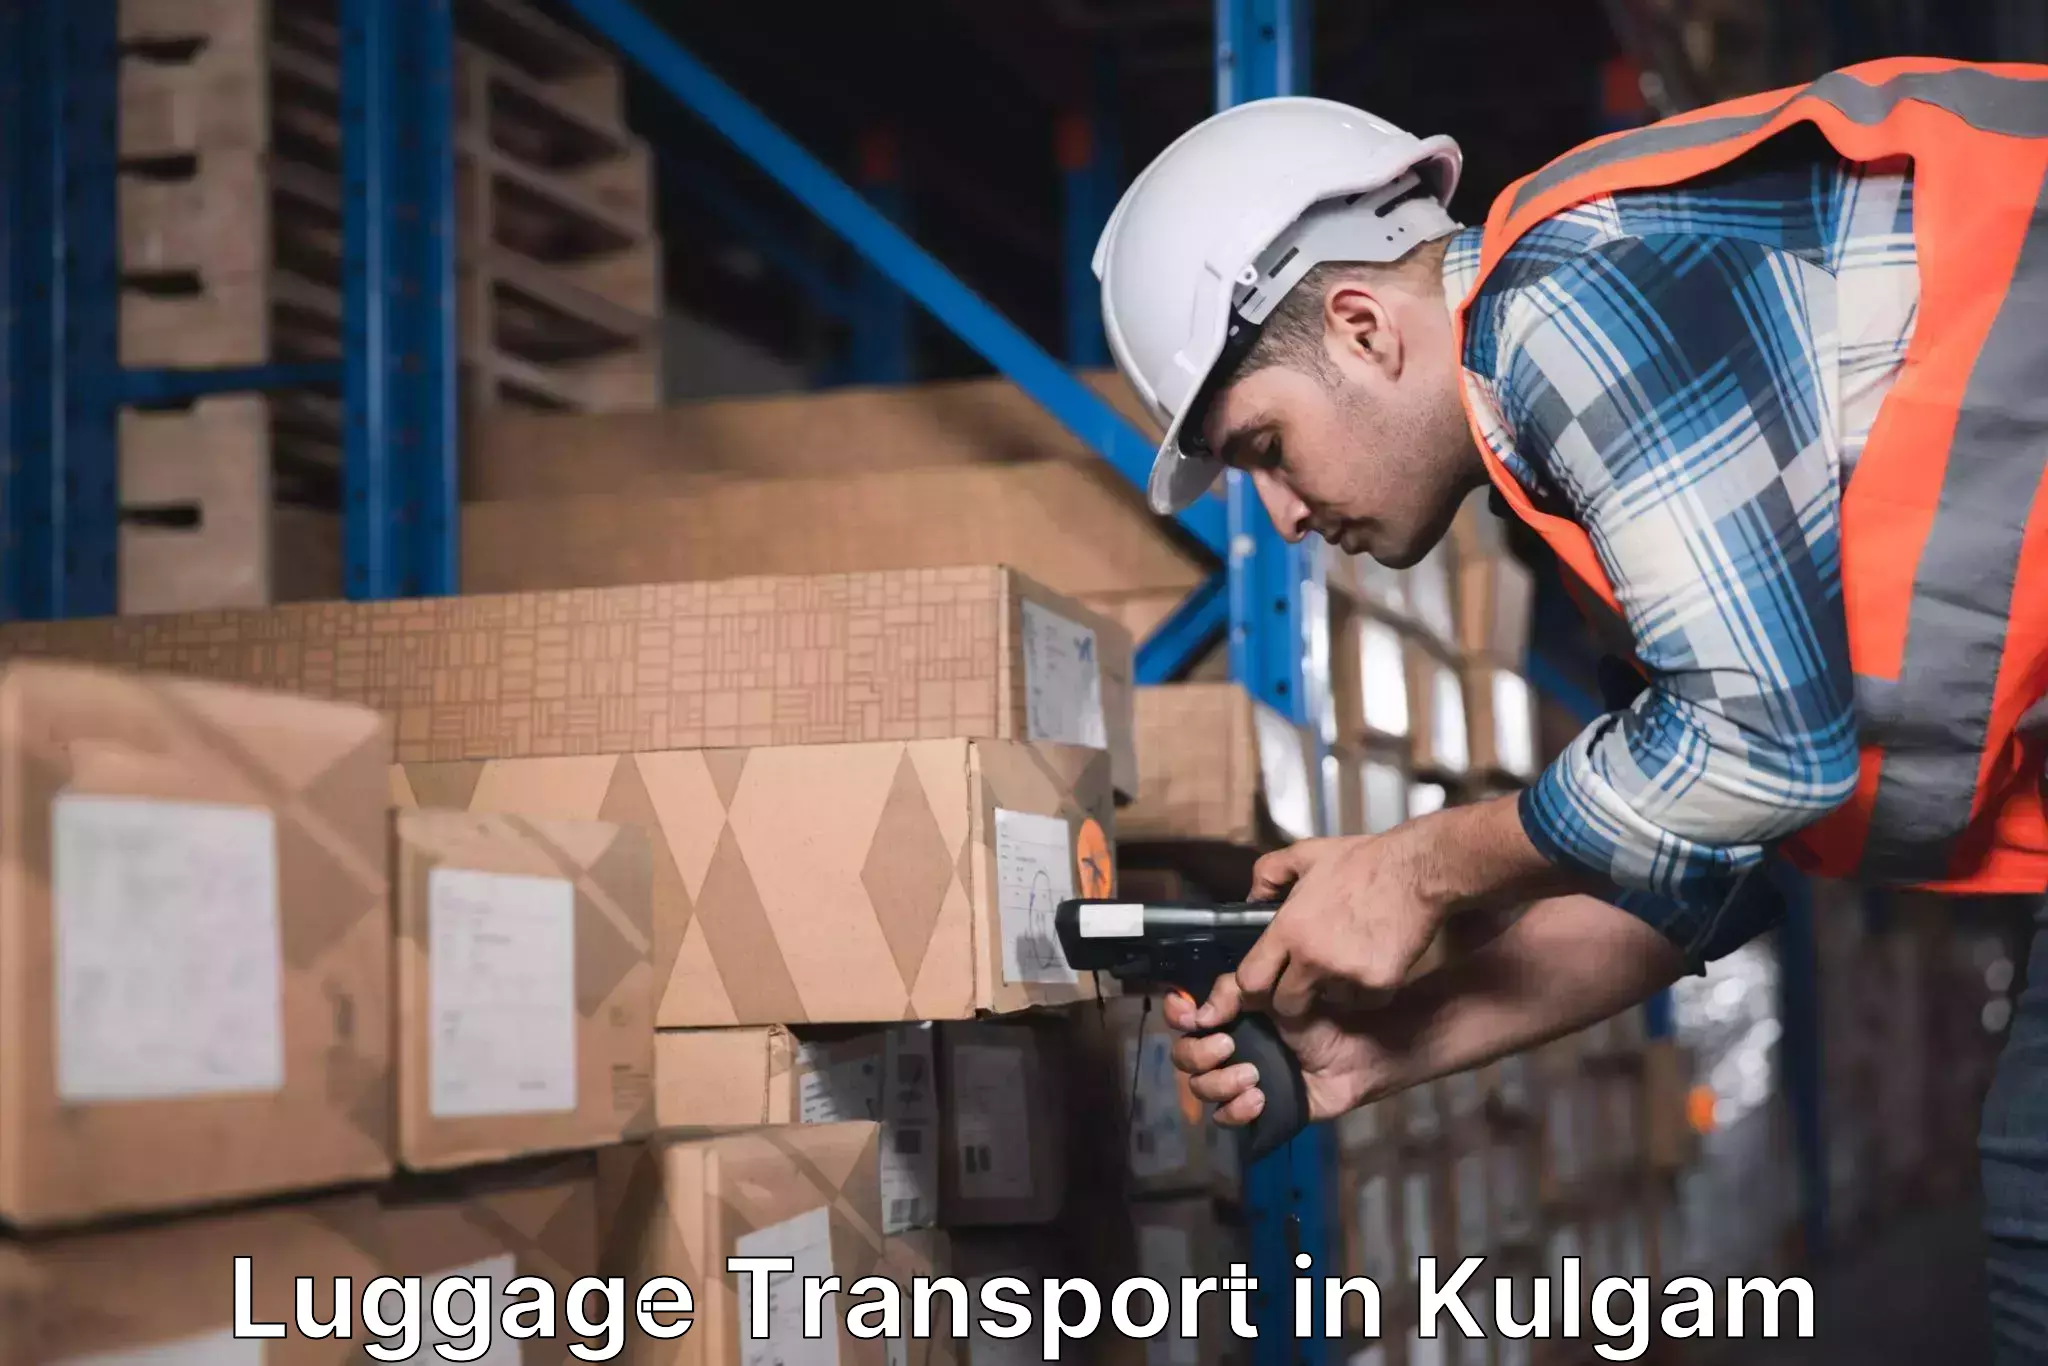 Luggage delivery optimization in Kulgam